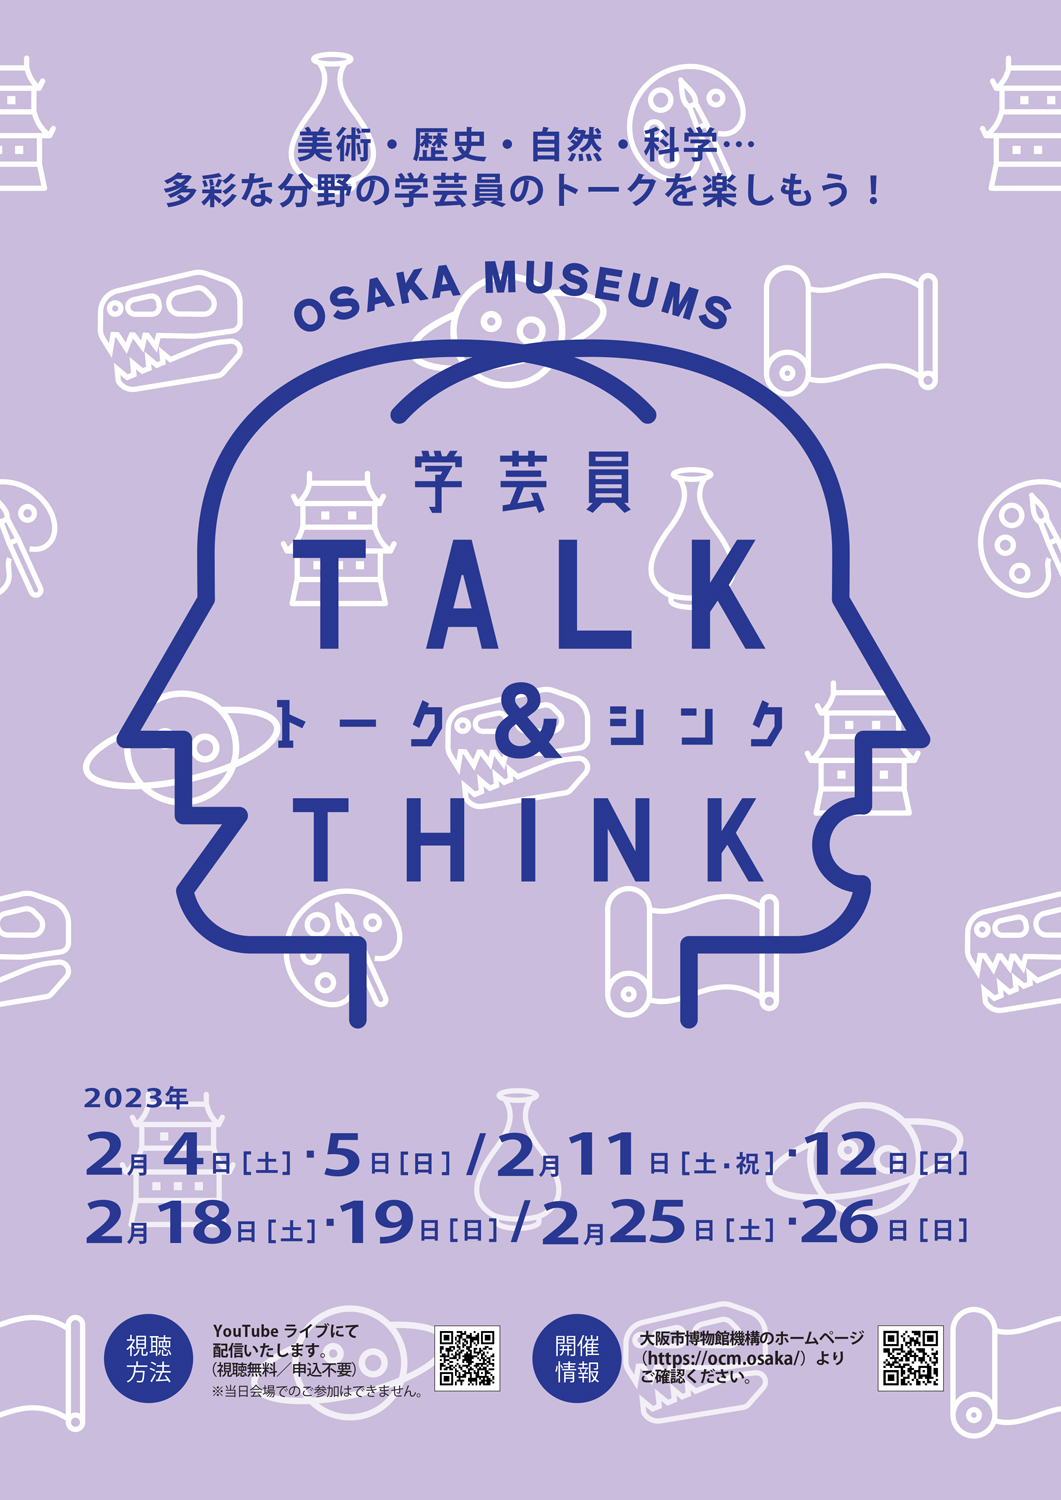 【トークイベント】OSAKA MUSEUMS 学芸員TALK＆THINK